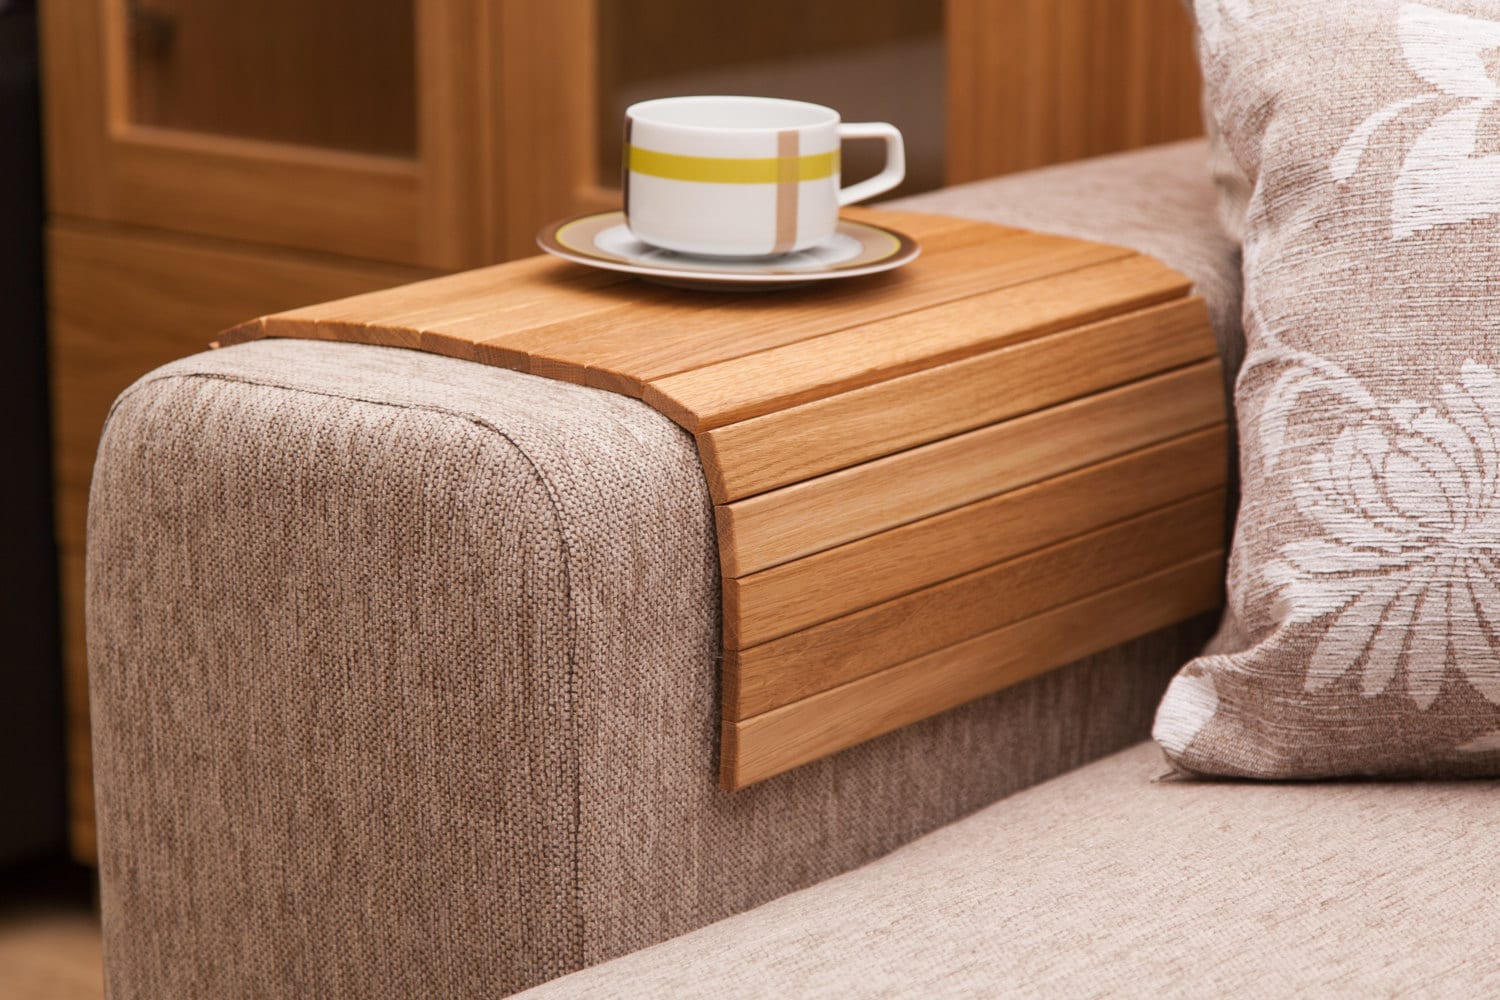 table naturelle de plateau latéral sofa chêne - réglable d'accoudoir en bois table surface douce et robuste pour le café, les casse-croûte, repas